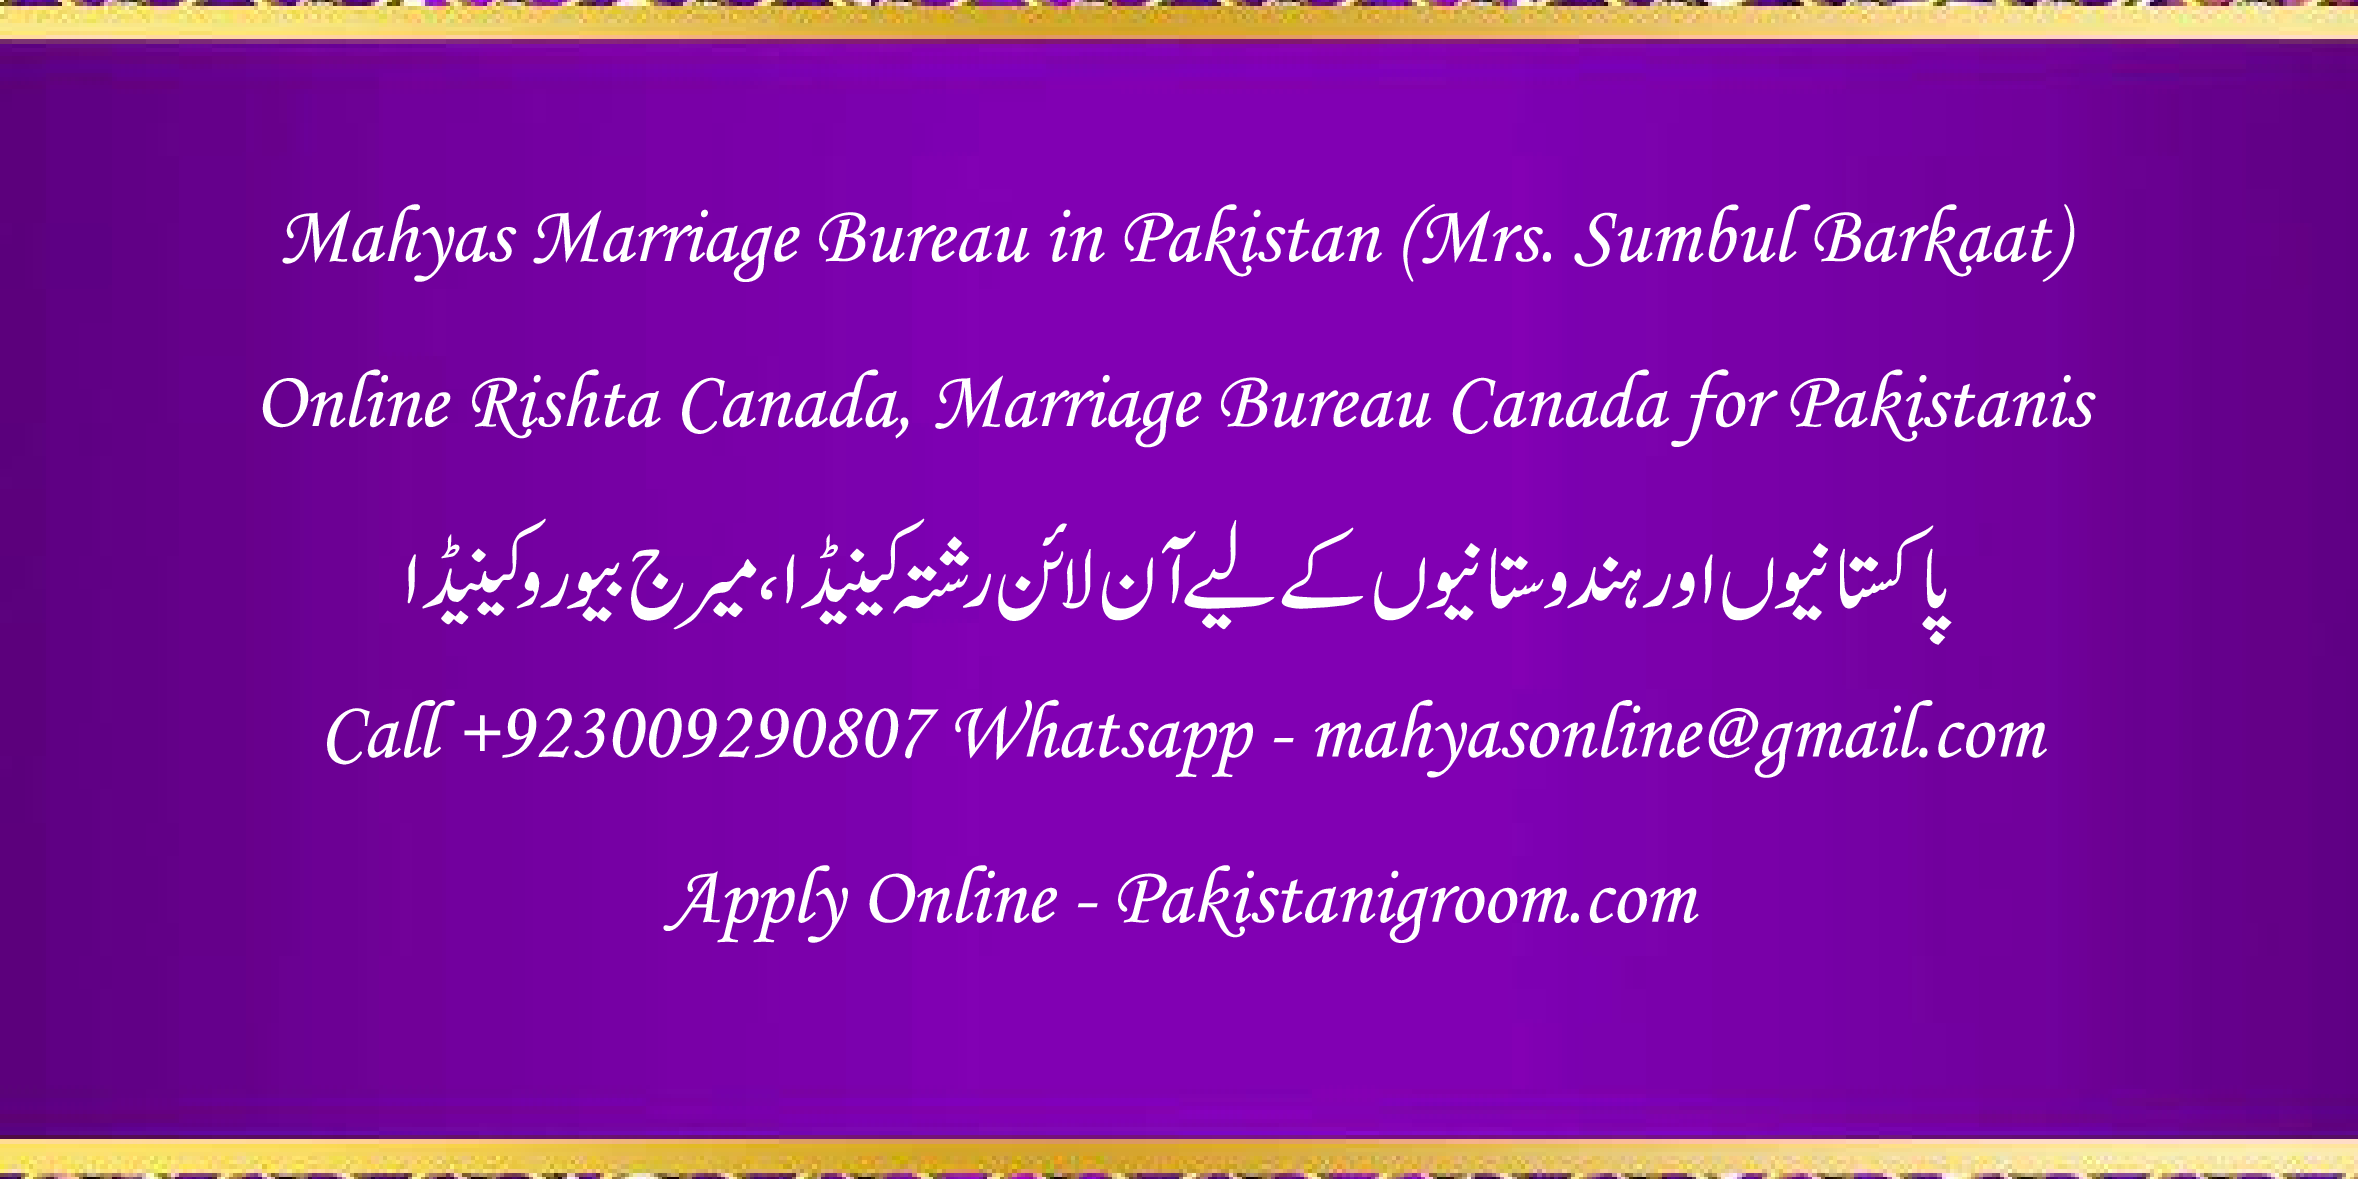 Mahyas-marriage-bureau-Karachi-Pakistan-for-Shia-Sunni-Remarriage-Divorce-Widow-Second-marriage-Punjabi-Pashto-Urdu-23.png